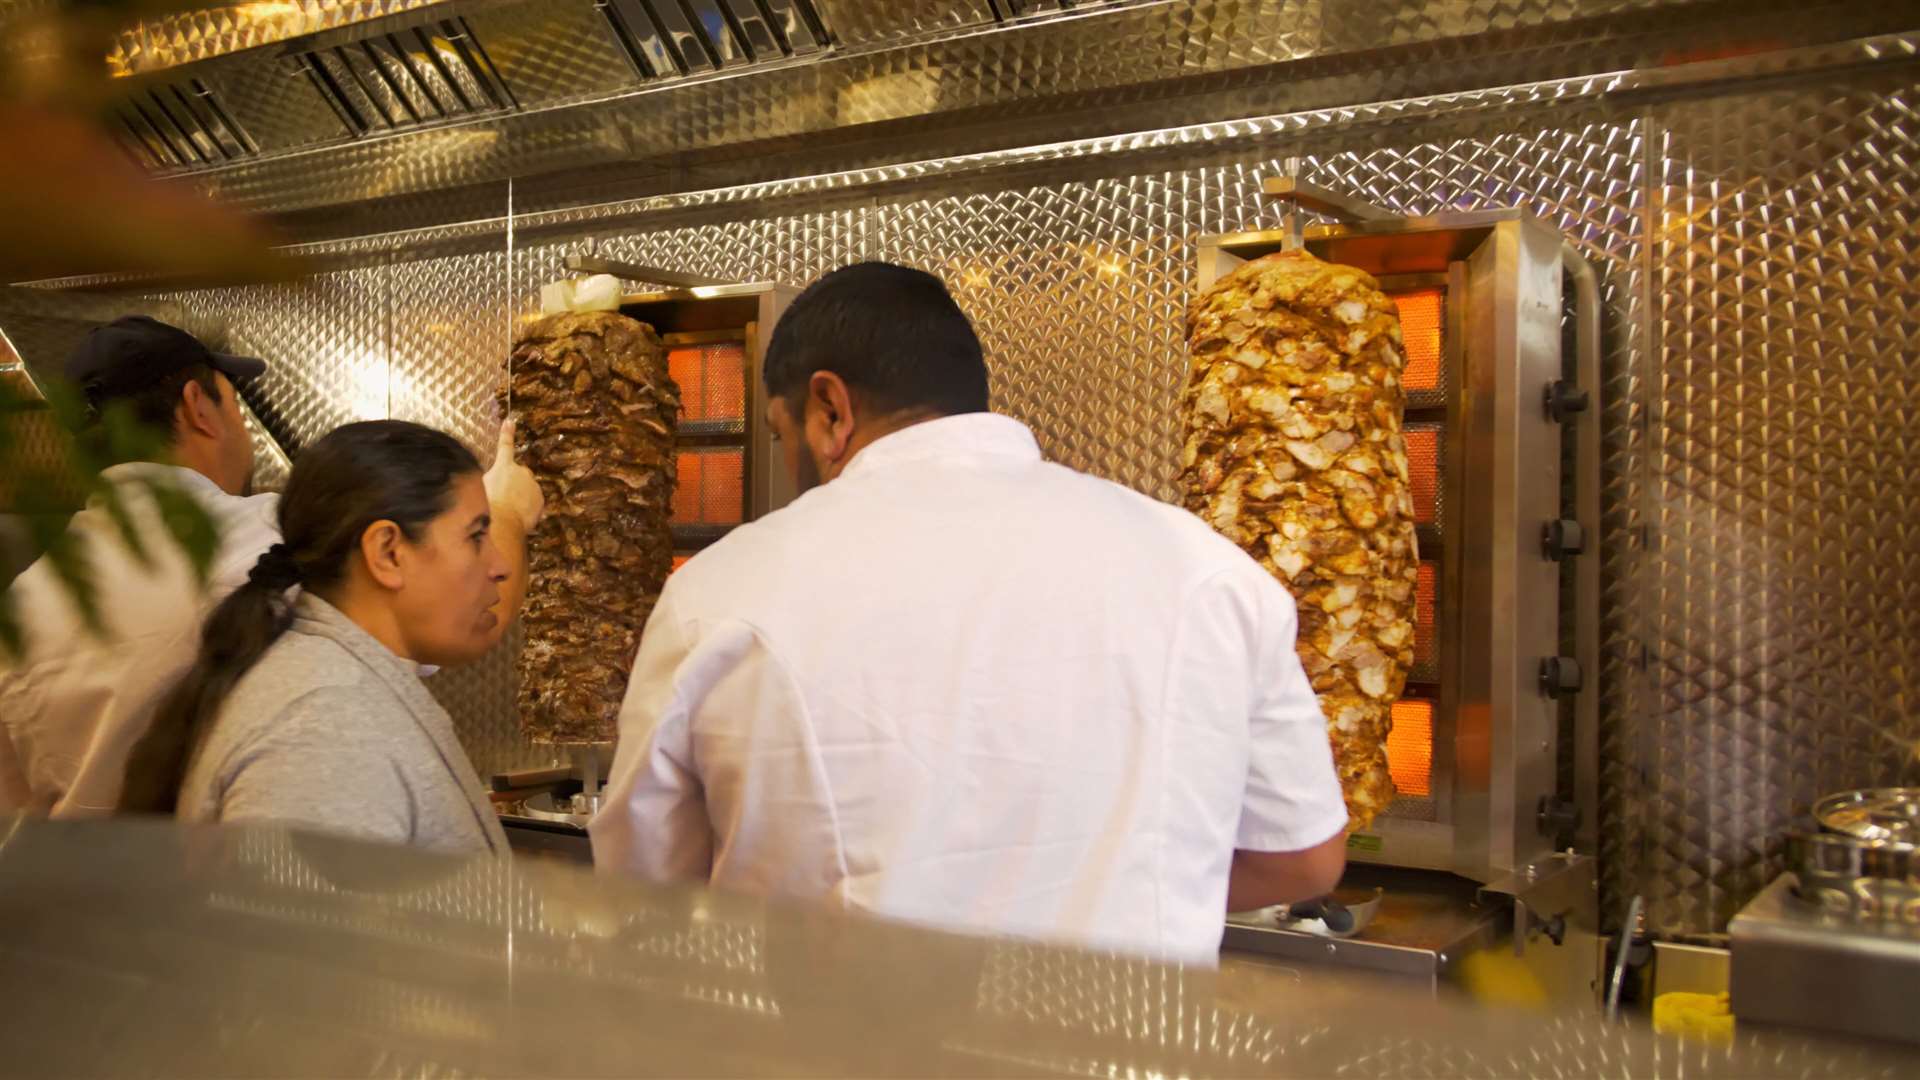 The restaurant specialises in authentic Turkish cuisine